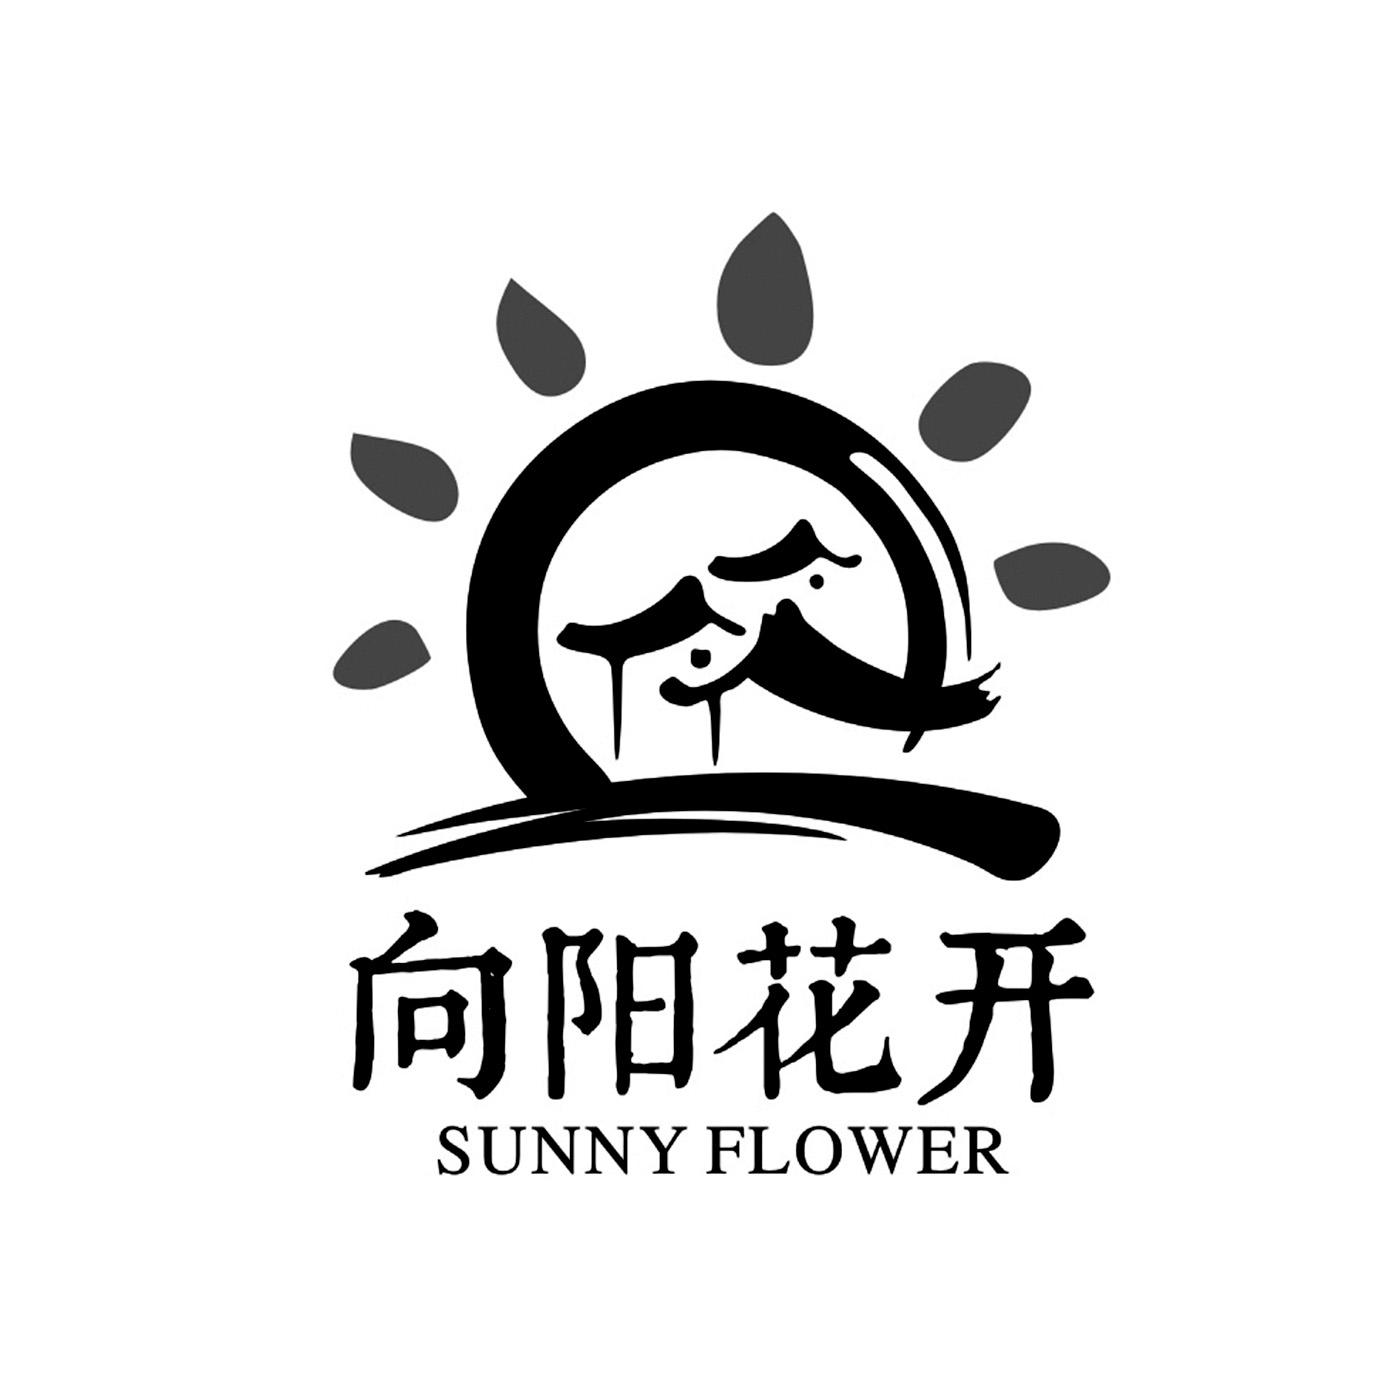 商标文字向阳花开 sunny flower商标注册号 21372829,商标申请人郭爱